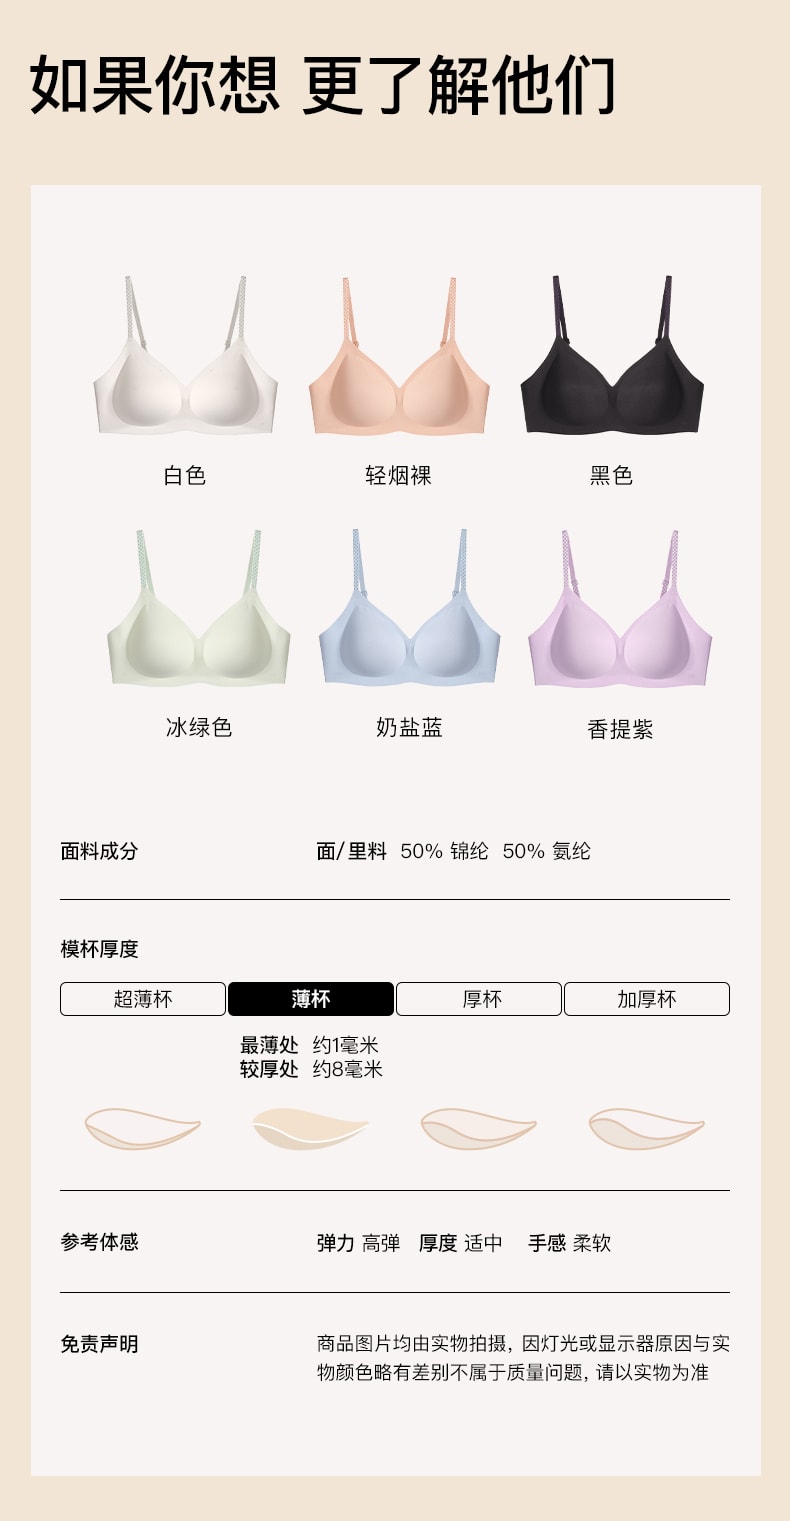 【中國直郵】Ubras內衣 無尺寸人魚公主胸罩背心款-標準-奶鹽藍色-均碼